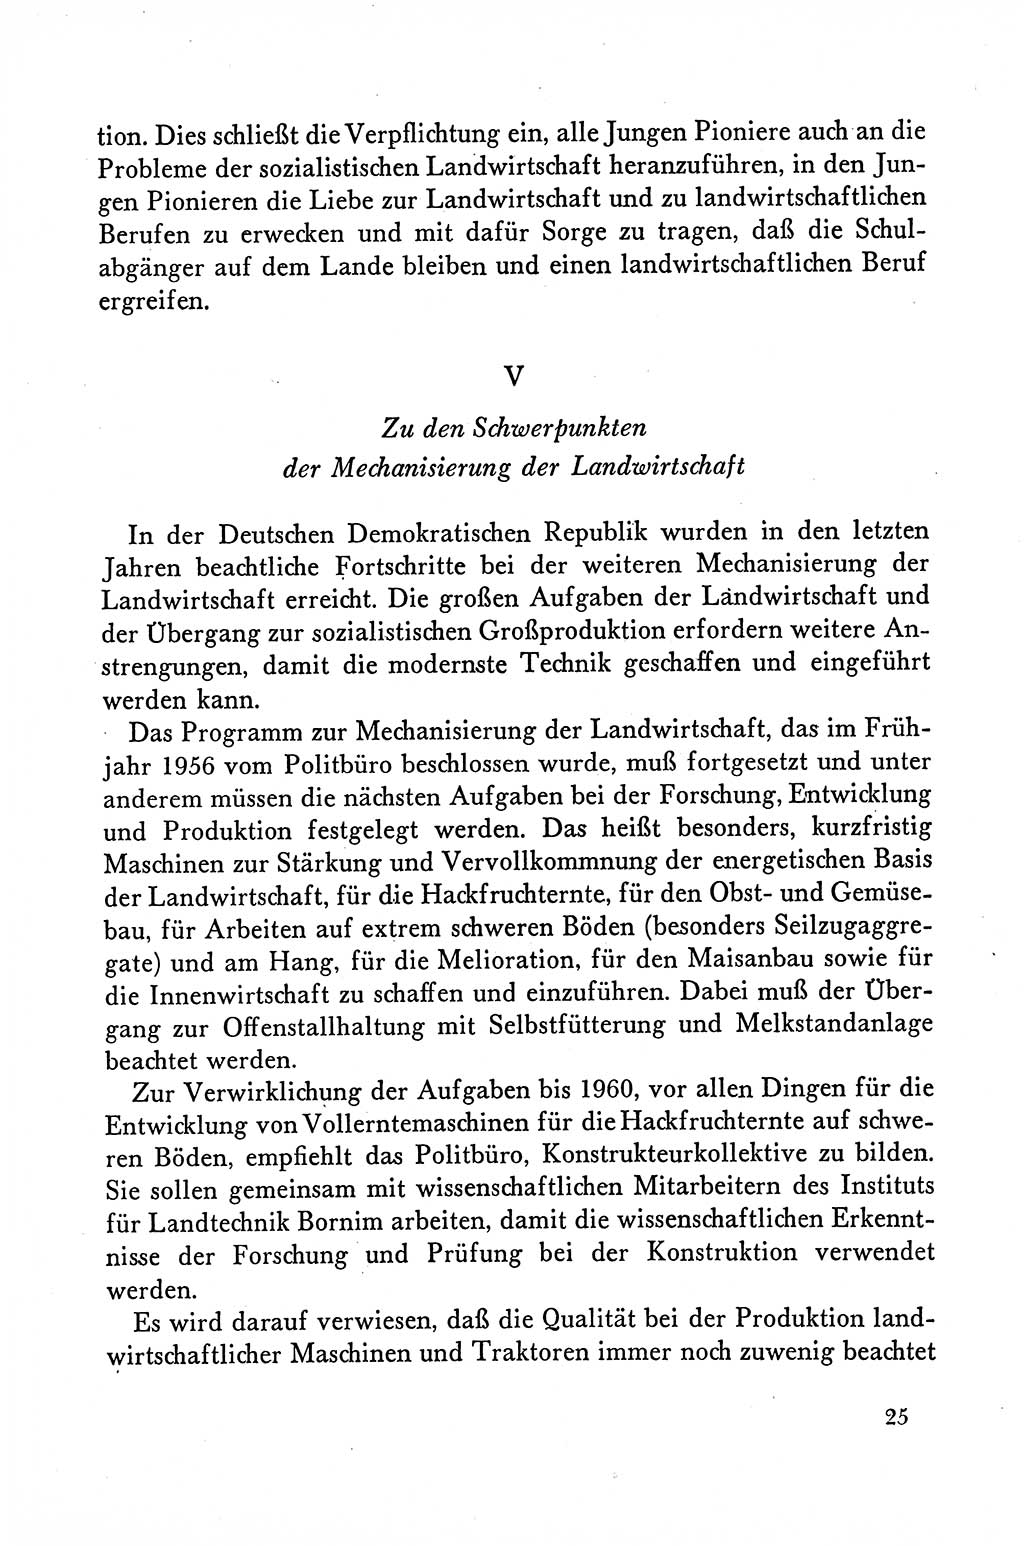 Dokumente der Sozialistischen Einheitspartei Deutschlands (SED) [Deutsche Demokratische Republik (DDR)] 1958-1959, Seite 25 (Dok. SED DDR 1958-1959, S. 25)